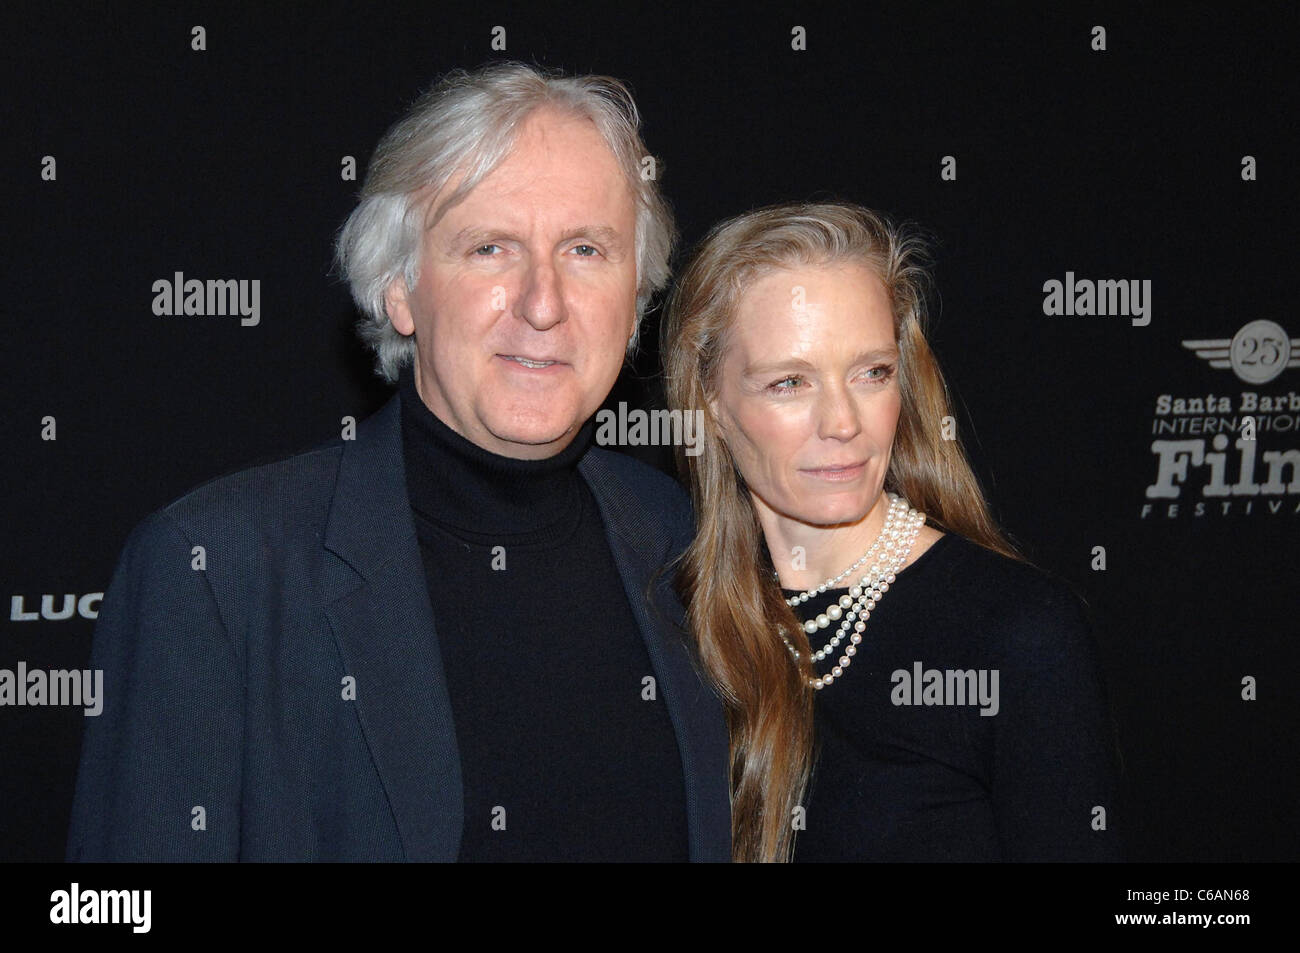 James Cameron y su esposa Suzy Amis 25 Santa Barbara International Film  Festival - Lucky marca Master Award se presenta moderno Fotografía de stock  - Alamy